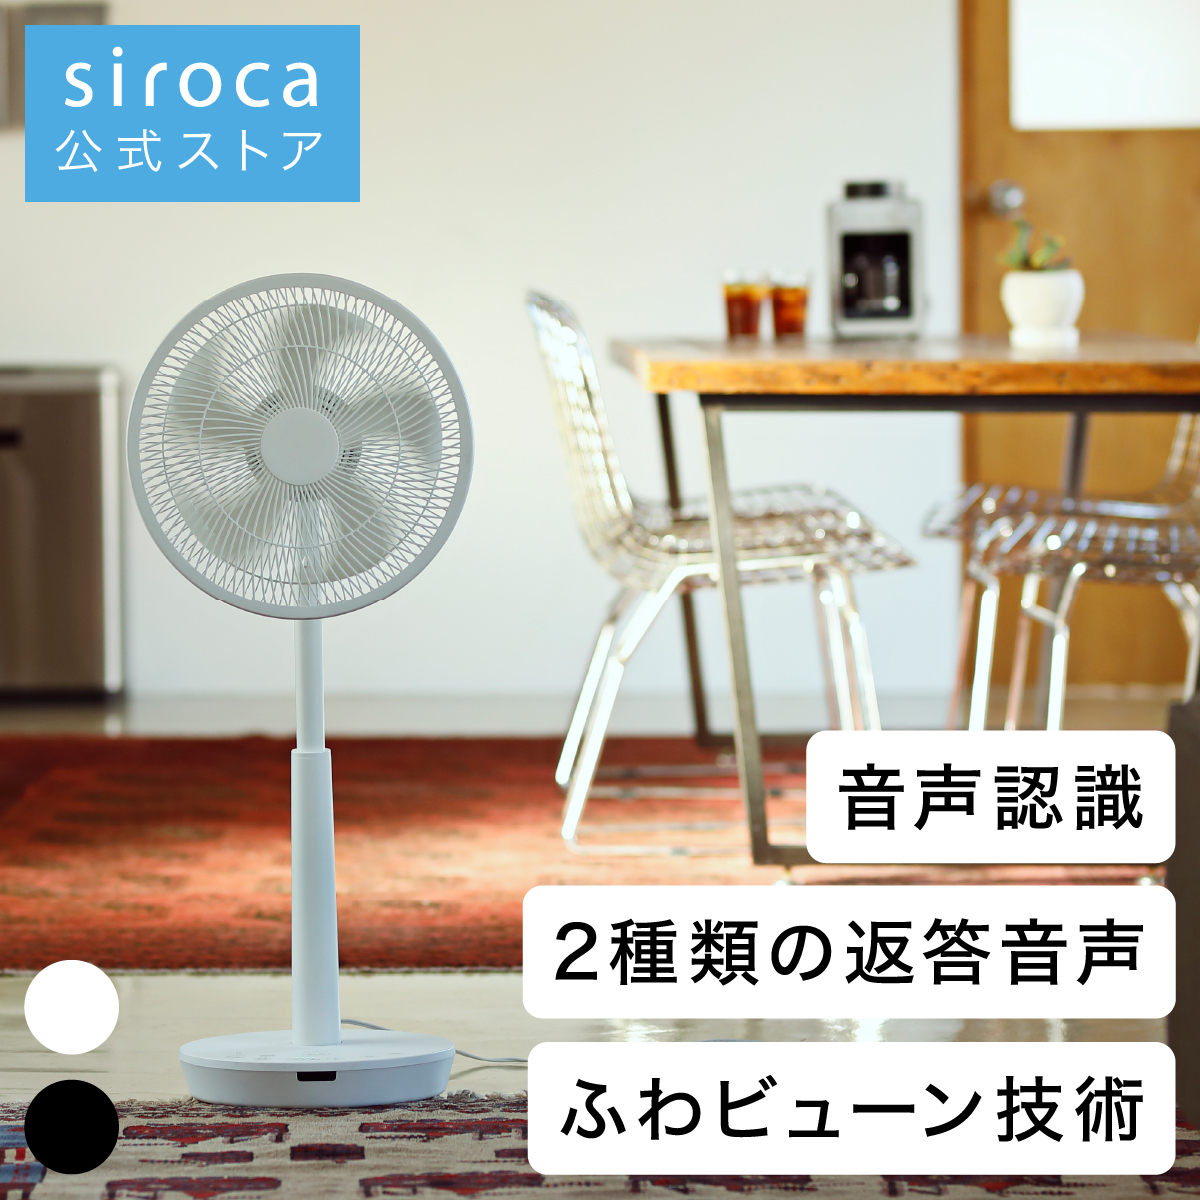 シロカ DC 音声操作 扇風機 リビング サーキュレーター ポチ扇・タマ扇 音声認識/2音声搭載/静音/リモコン付き/おやすみモード搭載/風 扇風機